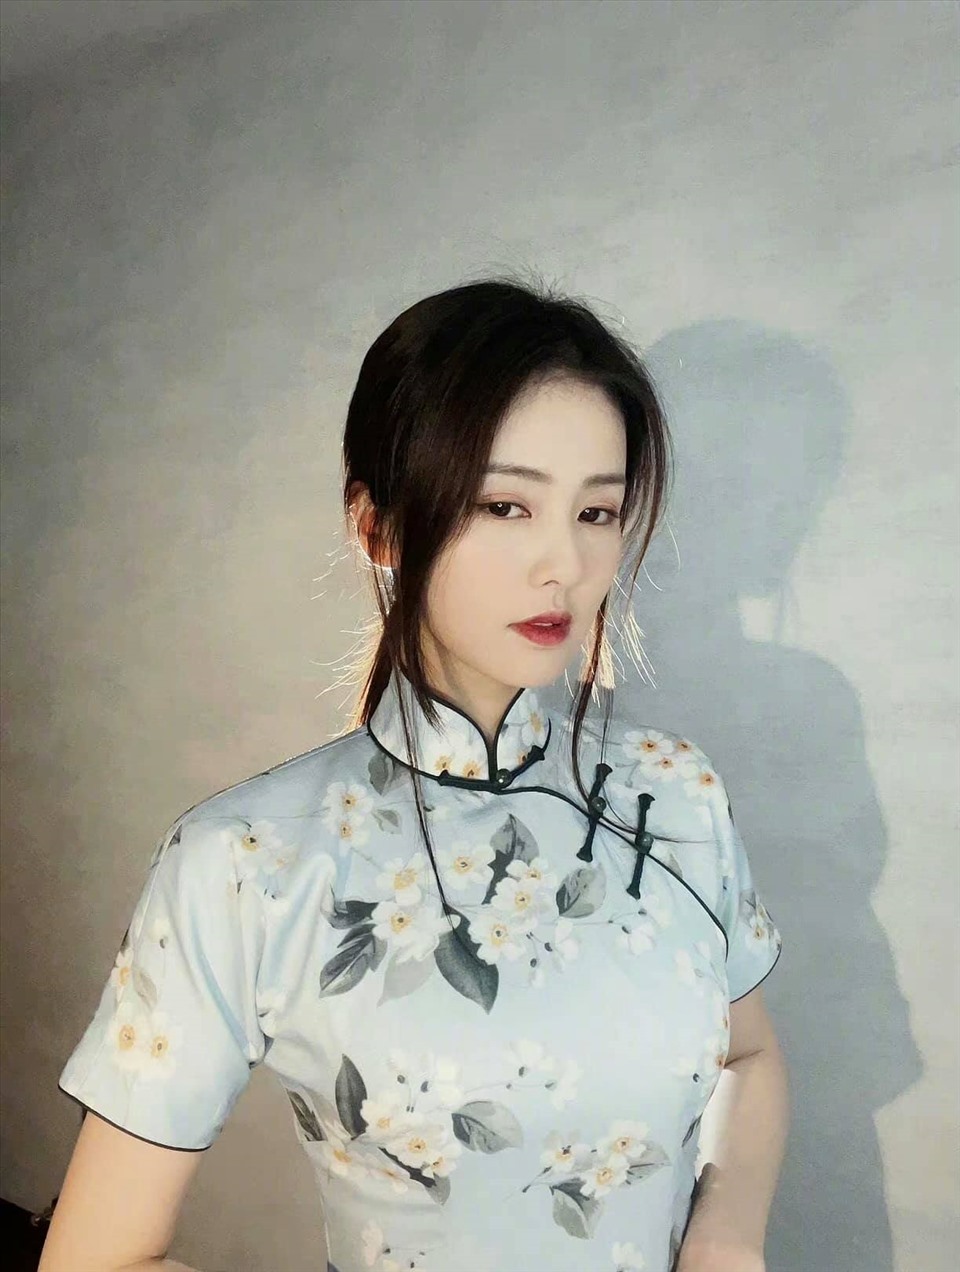 Nữ diễn viên là một trong những nữ diễn viên Trung Quốc thành công dựa vào thực lực và khả năng diễn xuất dù chưa từng học qua trường lớp dạy diễn xuất chính thống nào, điều này giúp Bạch Lộc hoàn phá vỡ định kiến về việc xuất thân là một hotgirl mạng xã hội.